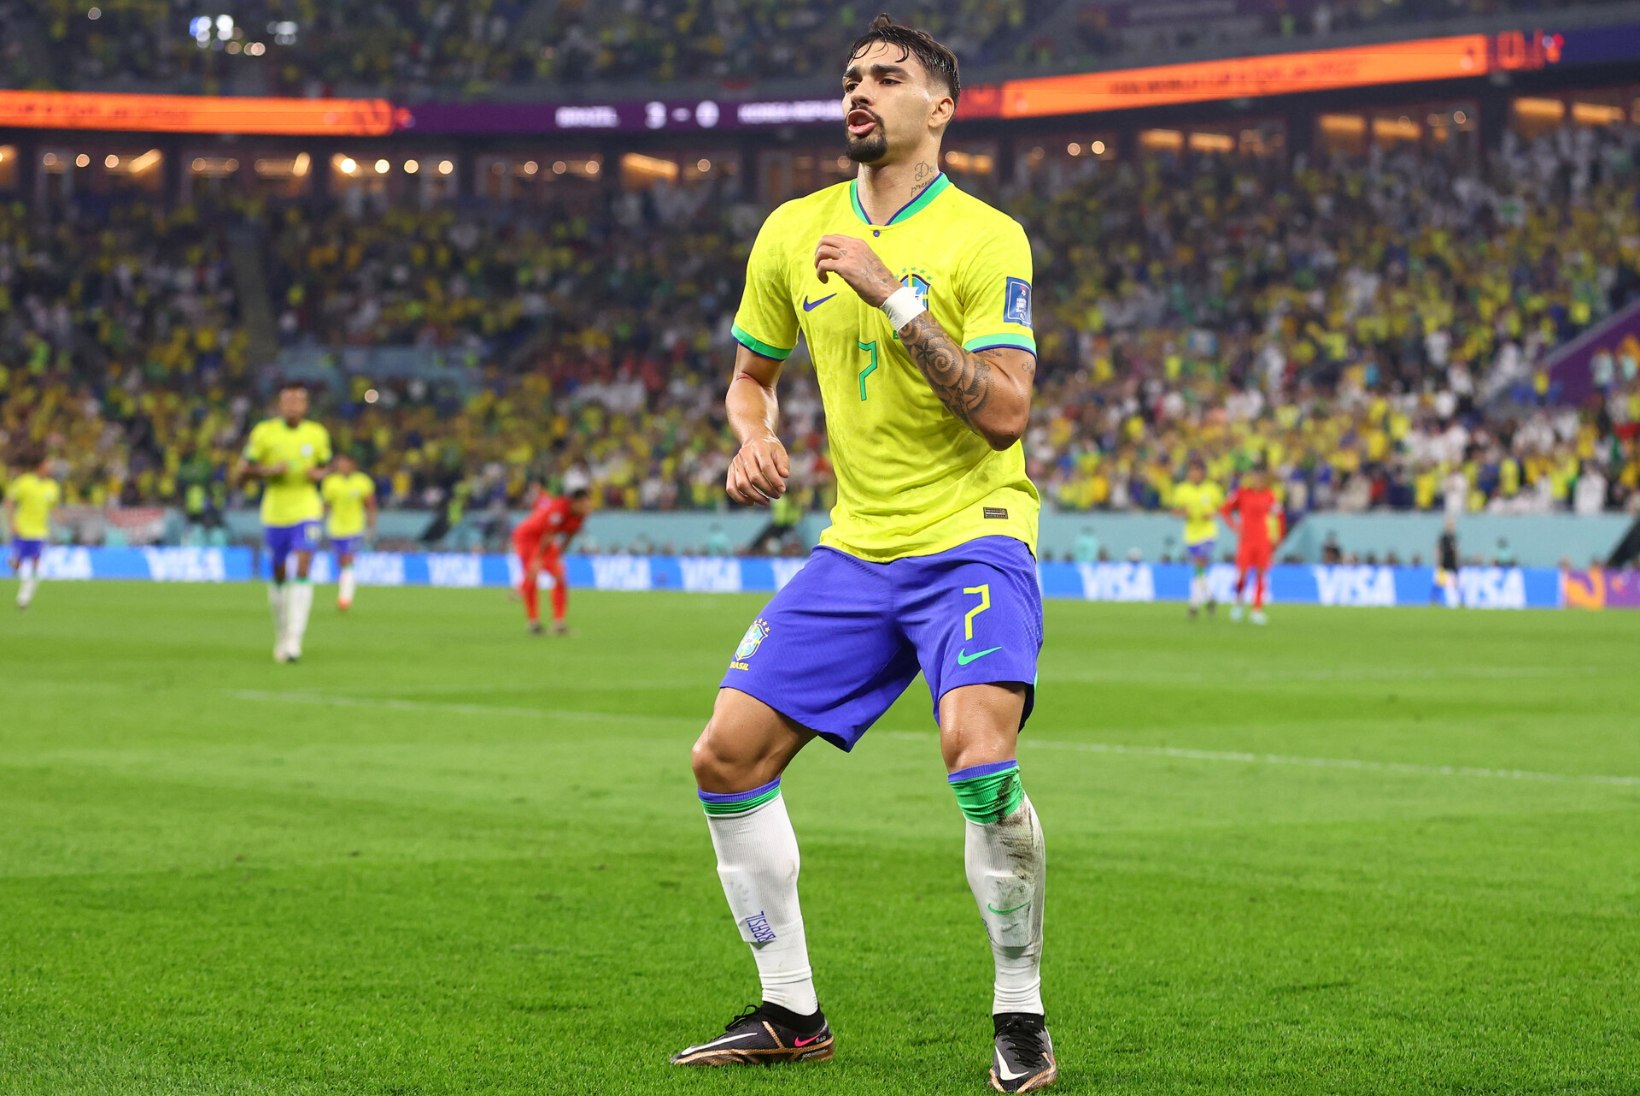 MMi BLOGI | Lõuna-Korea sai auvärava kätte, aga Brasiilia suurt võitu see ei vääranud